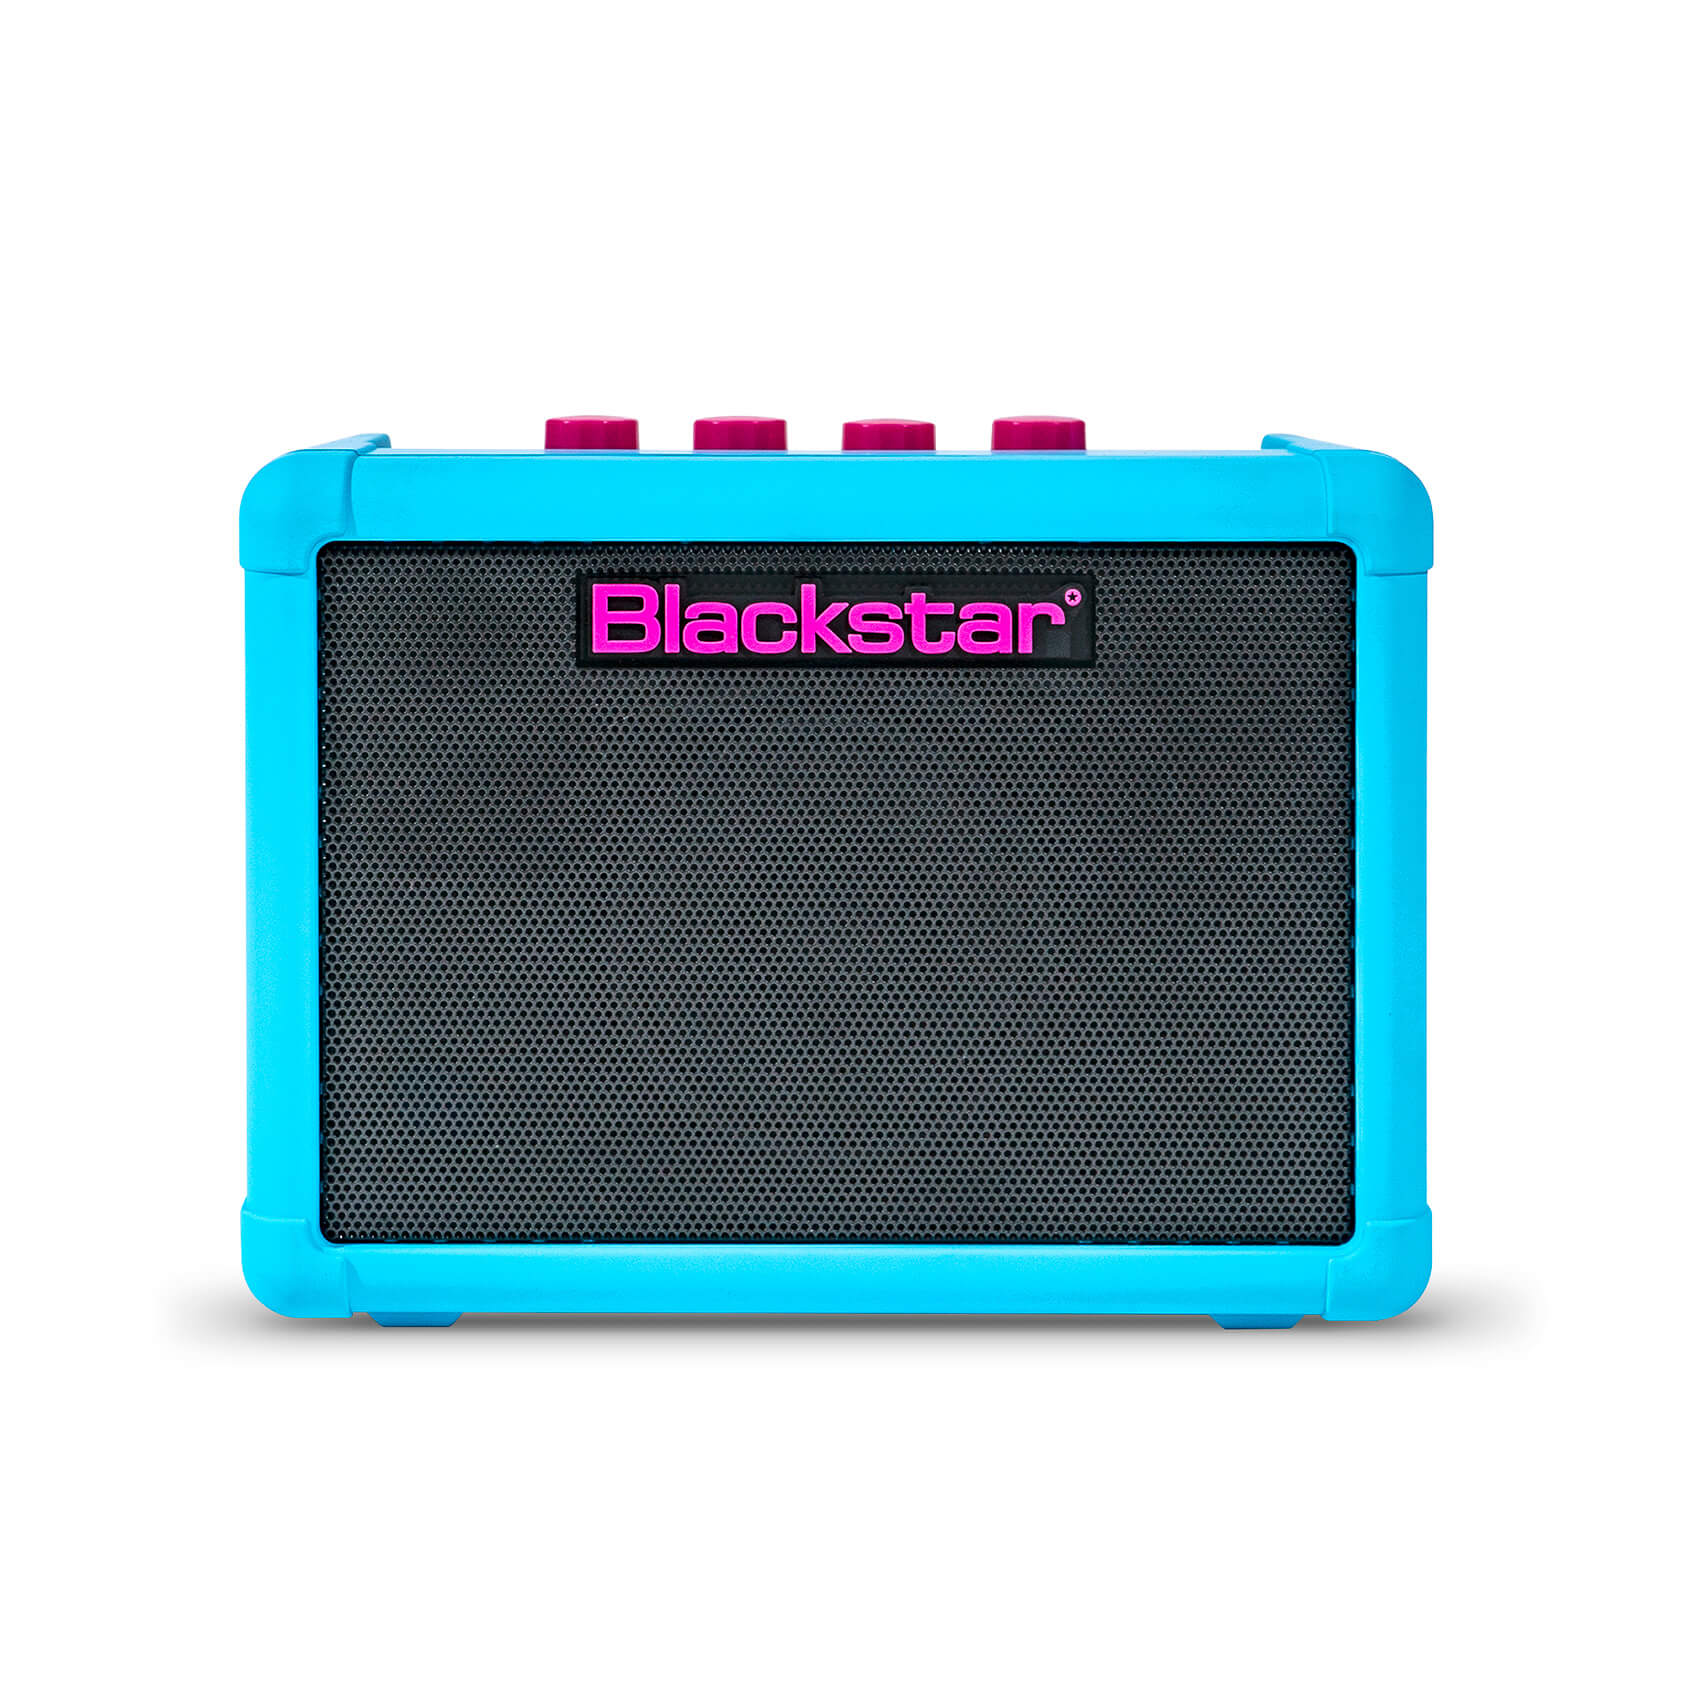 Blackstar Fly 3 3 Watt Combo Guitar Amplifier